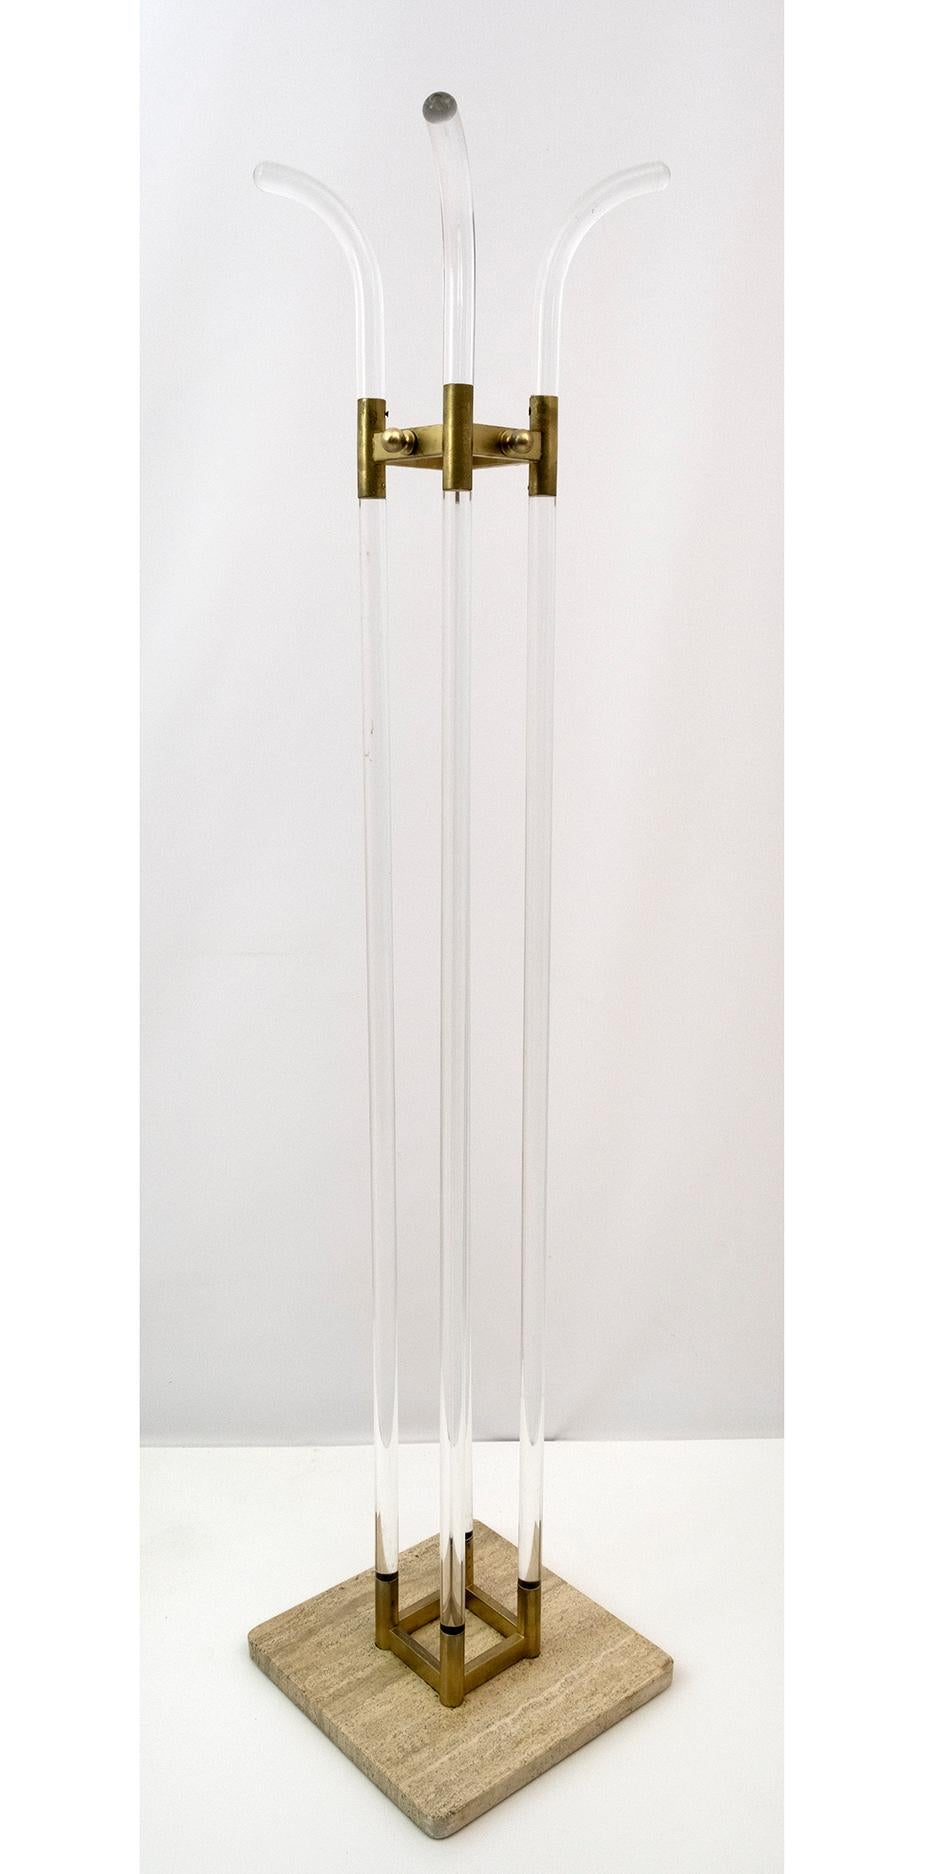 Minimalistischer Kleiderbügel aus Plexiglas, goldenem Metall und Travertinsockel, italienische Produktion aus den 1960er Jahren.